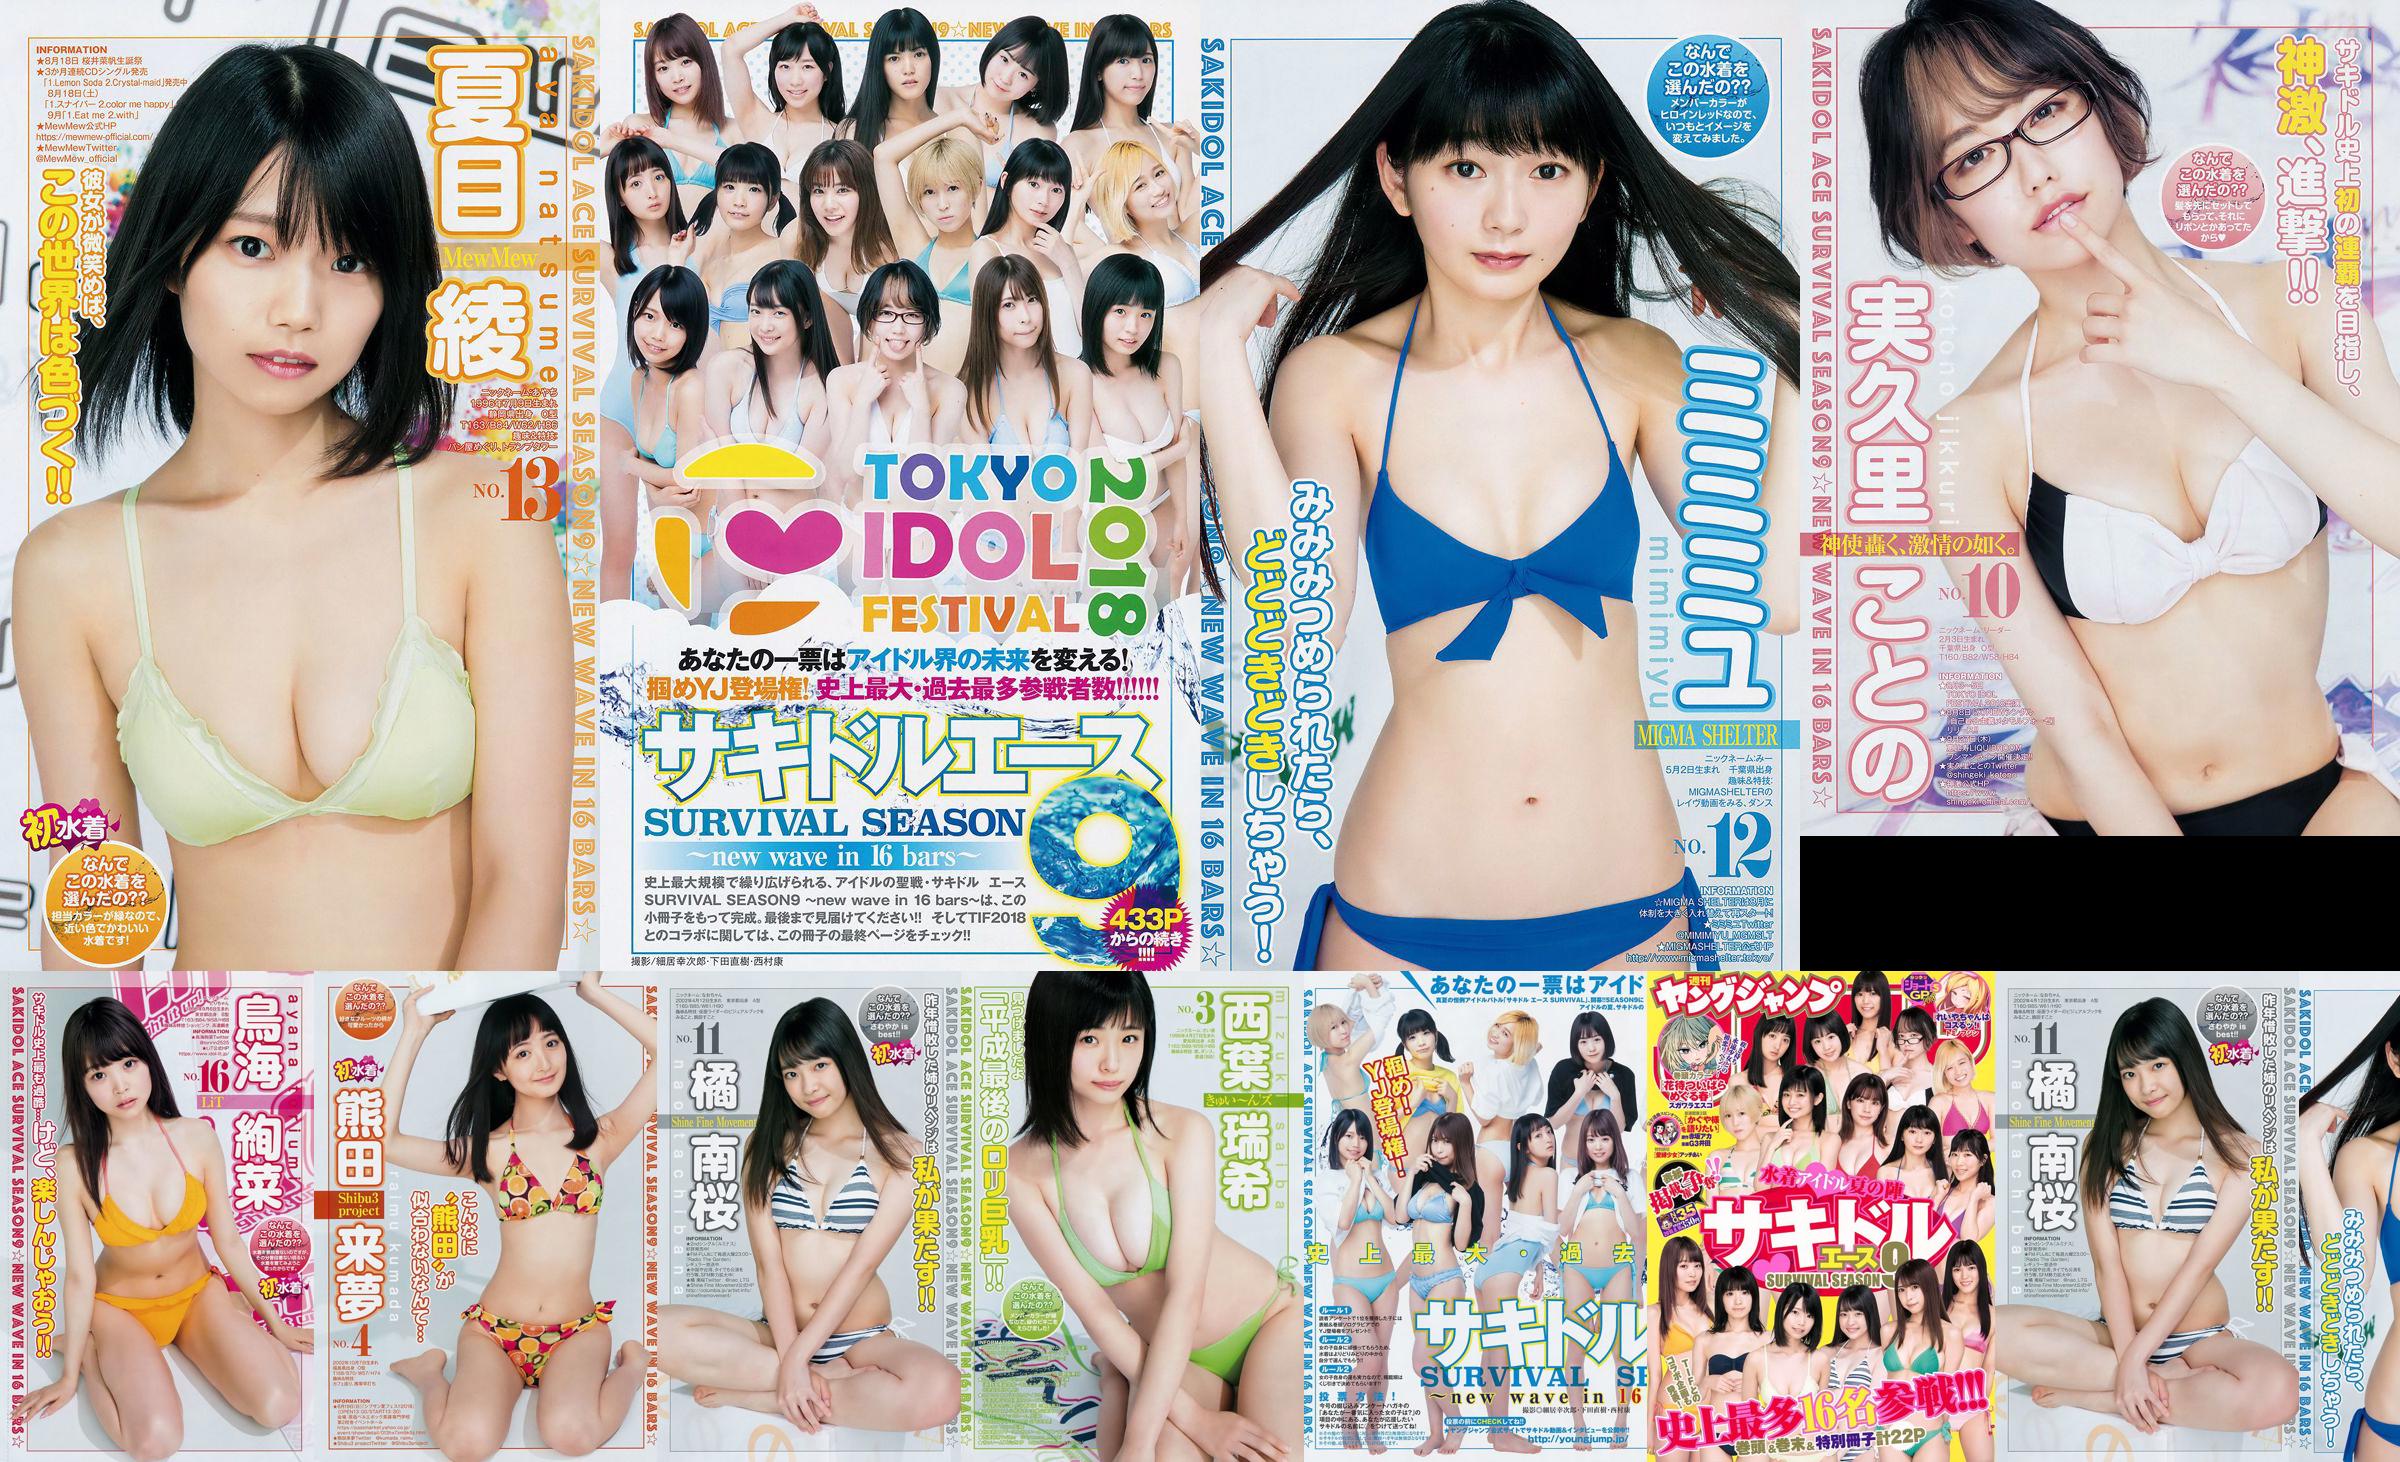 [FLASH] Ikumi Hisamatsu Risa Hirako Ren Ishikawa Angel Moe AKB48 Kaho Shibuya Misuzu Hayashi Ririka 2015.04.21 Foto Toshi No.e0d7f7 Seite 1